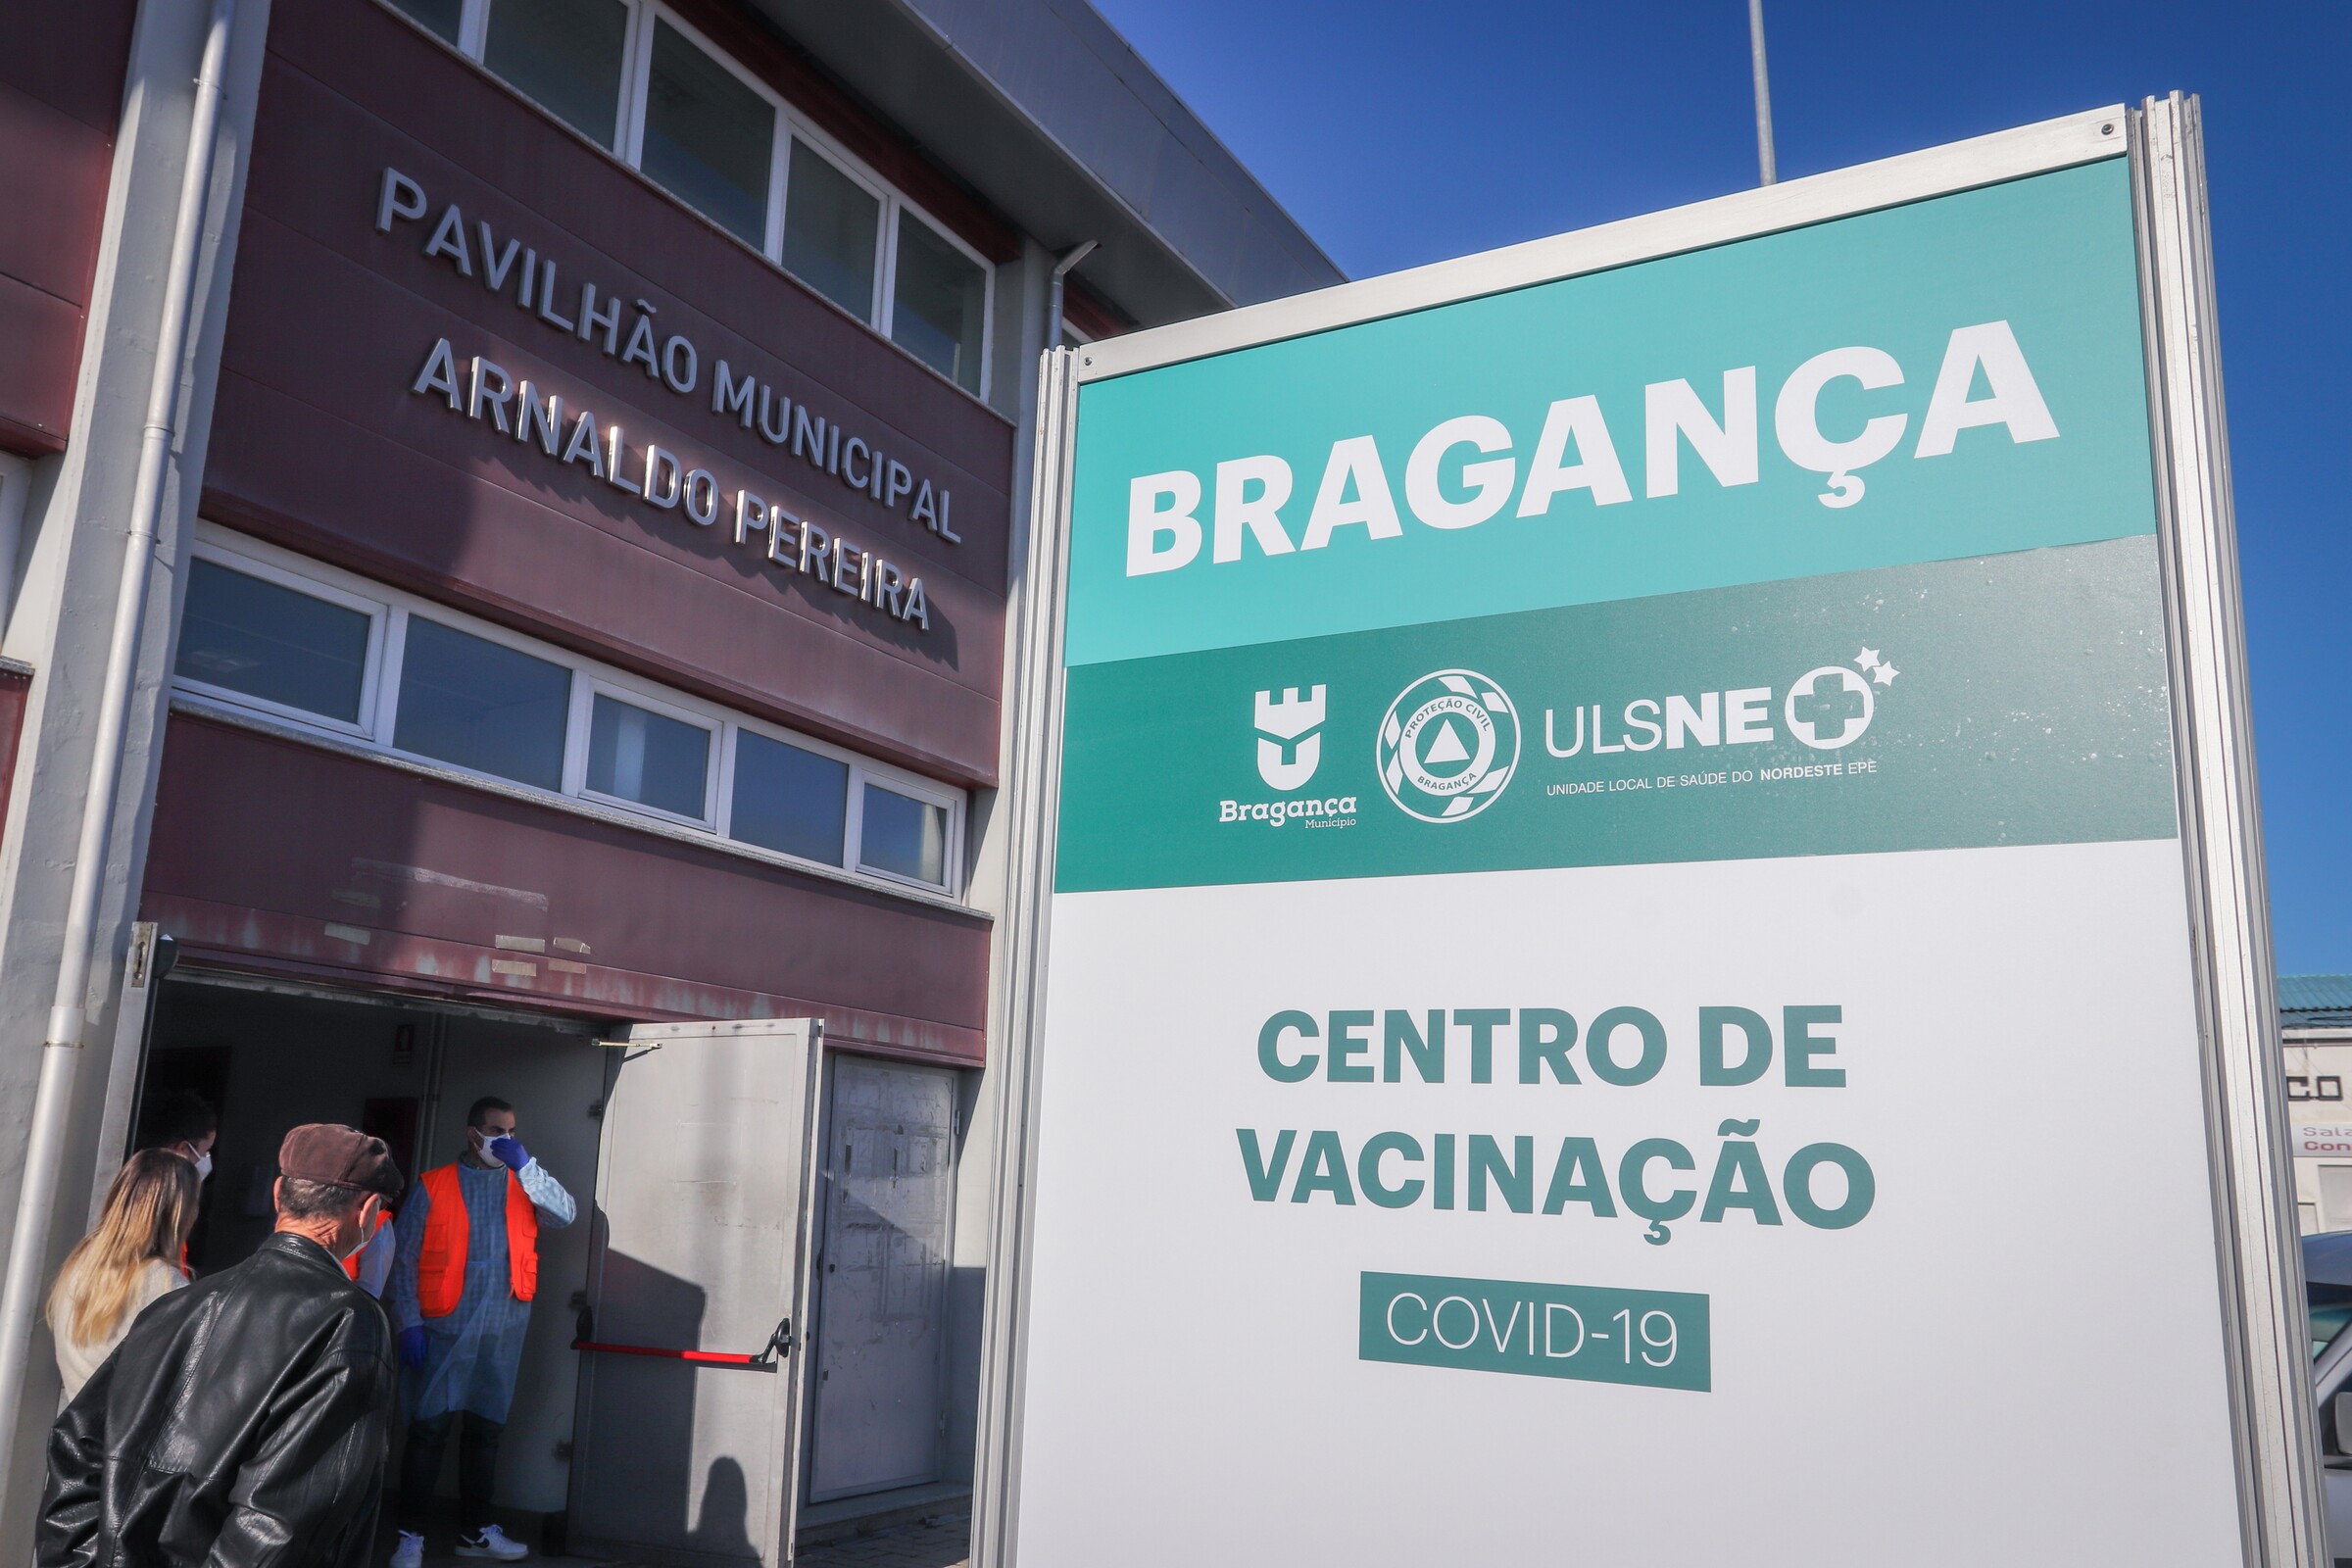 Centro de Vacinação Covid-19 de Bragança entrou hoje em funcionamento